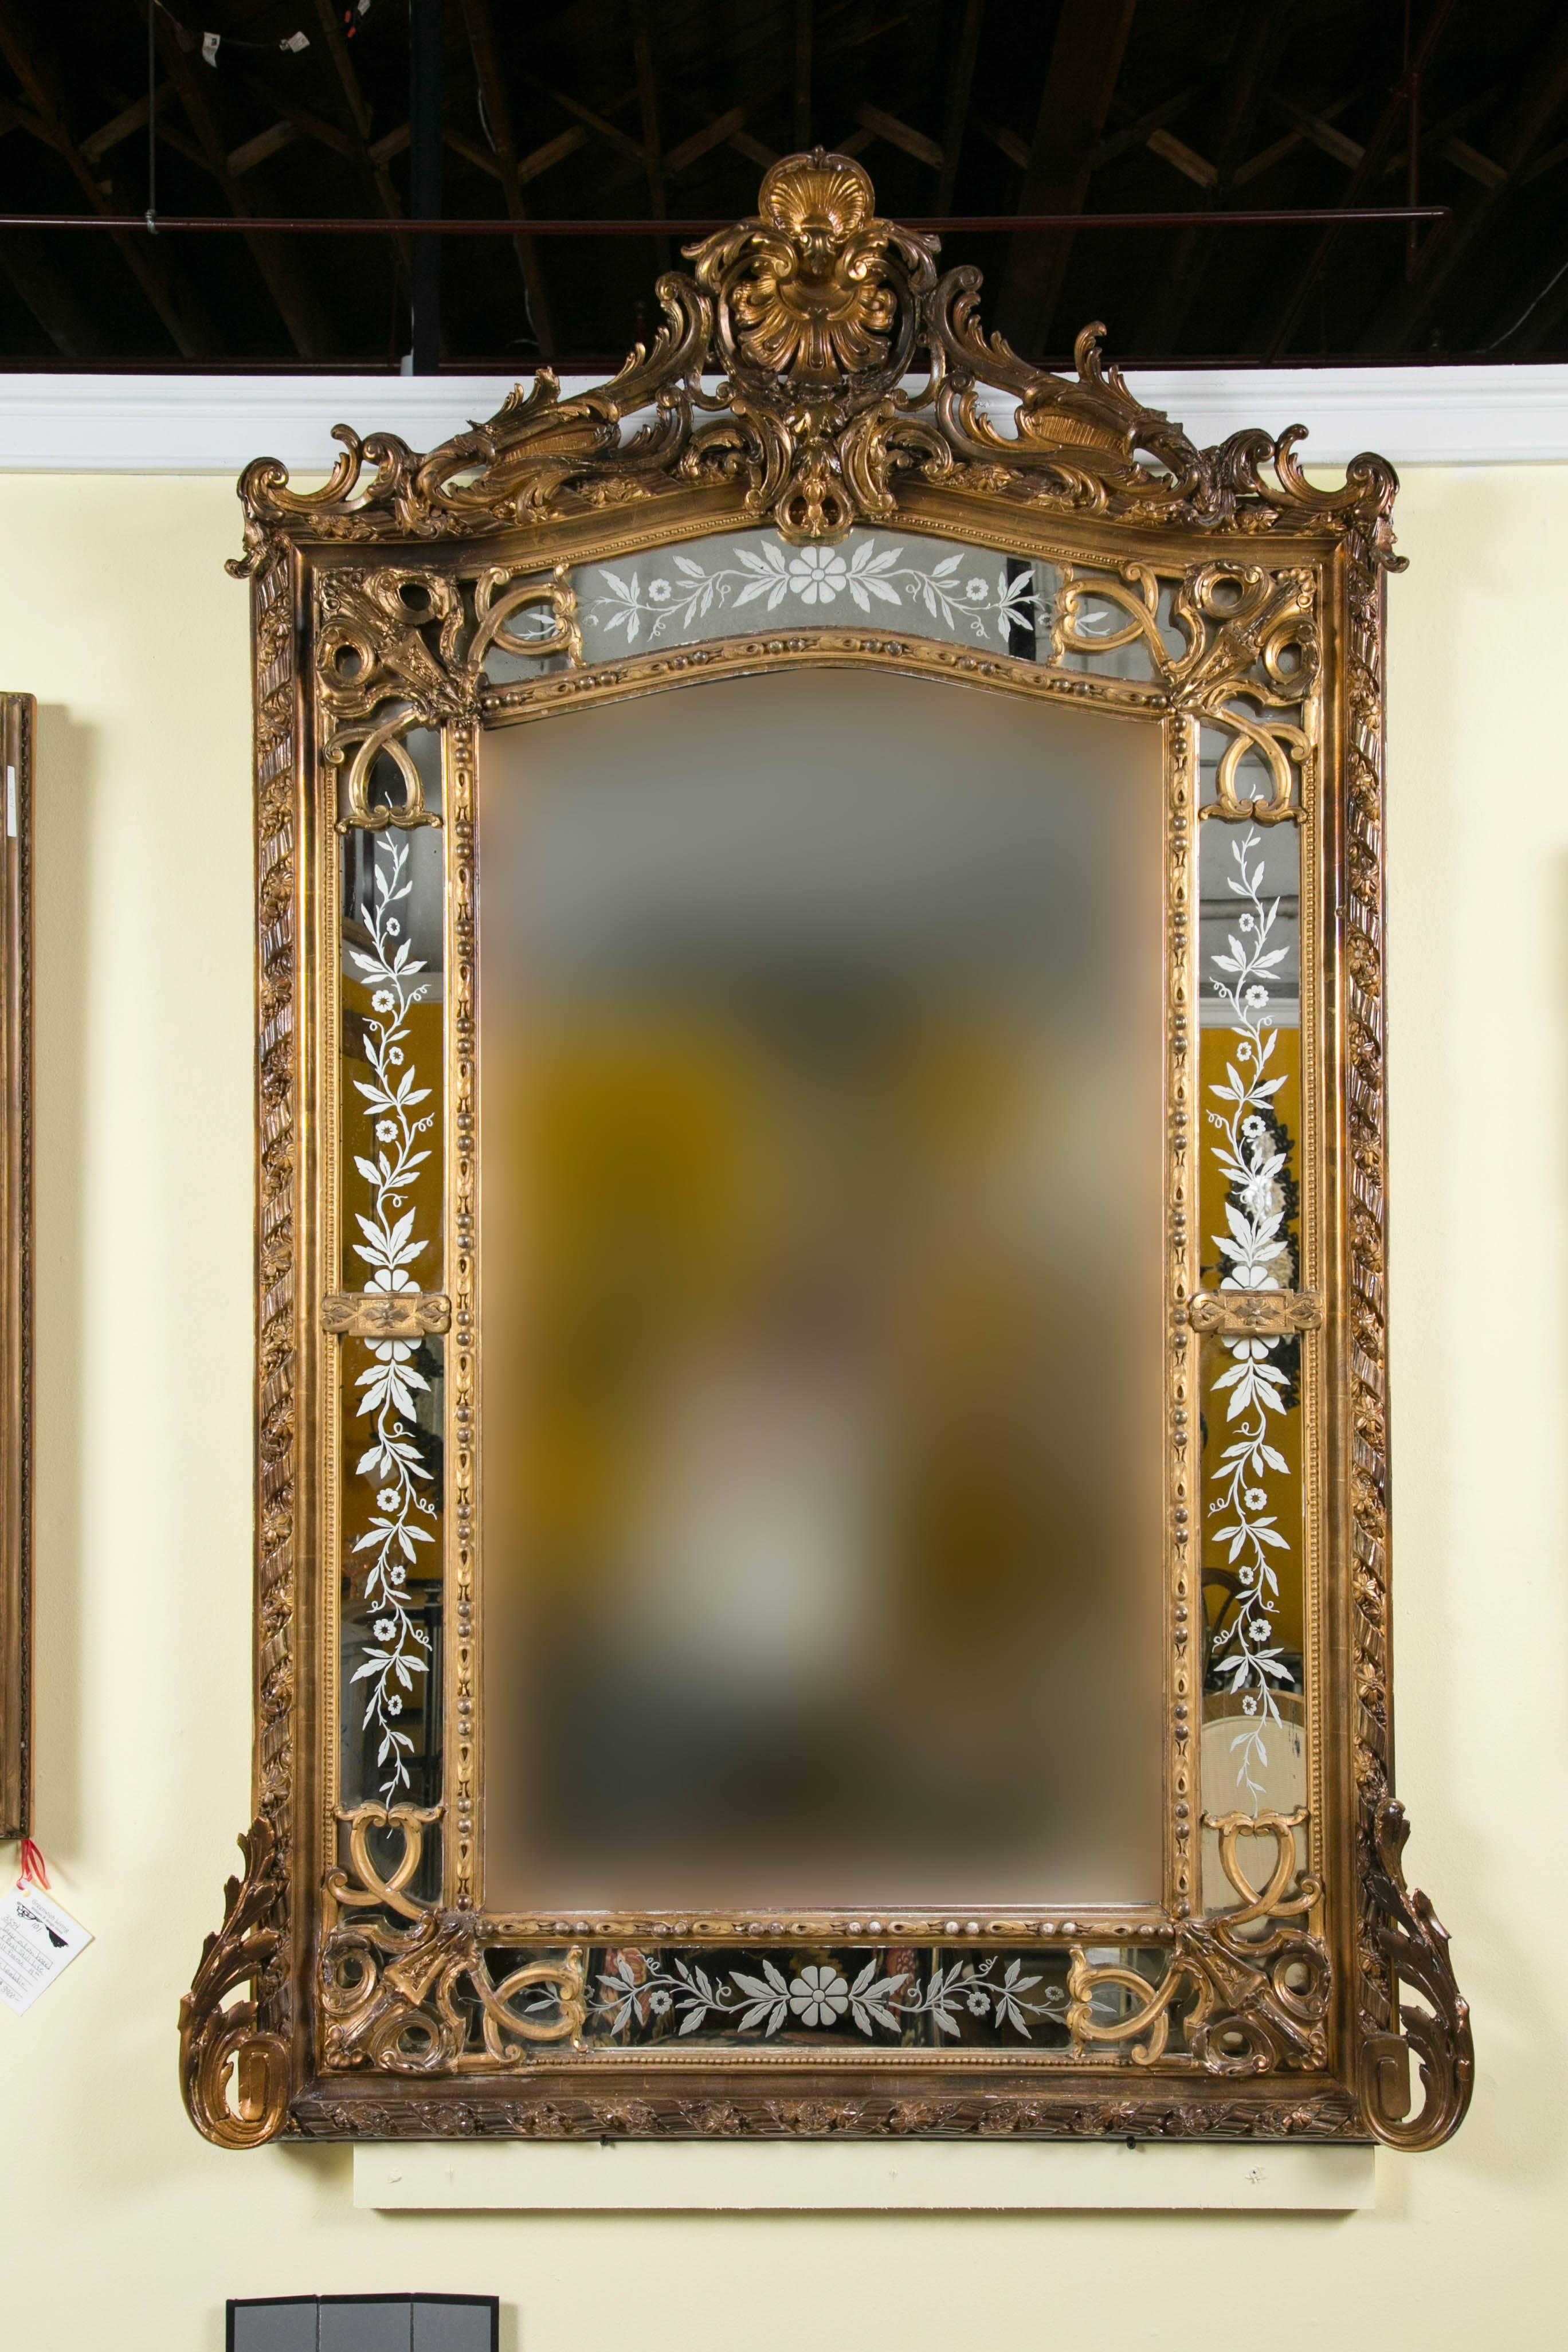 Ein 19. Jahrhundert Französisch vergoldetem Holz und Gesso monumentalen Wand / über den Kaminsims Spiegel. Wenn es um eine Aussage geht, ist dies sicherlich der richtige Spiegel dafür. Die abgeschrägte Mitte wird von vier Tafeln mit geätzten